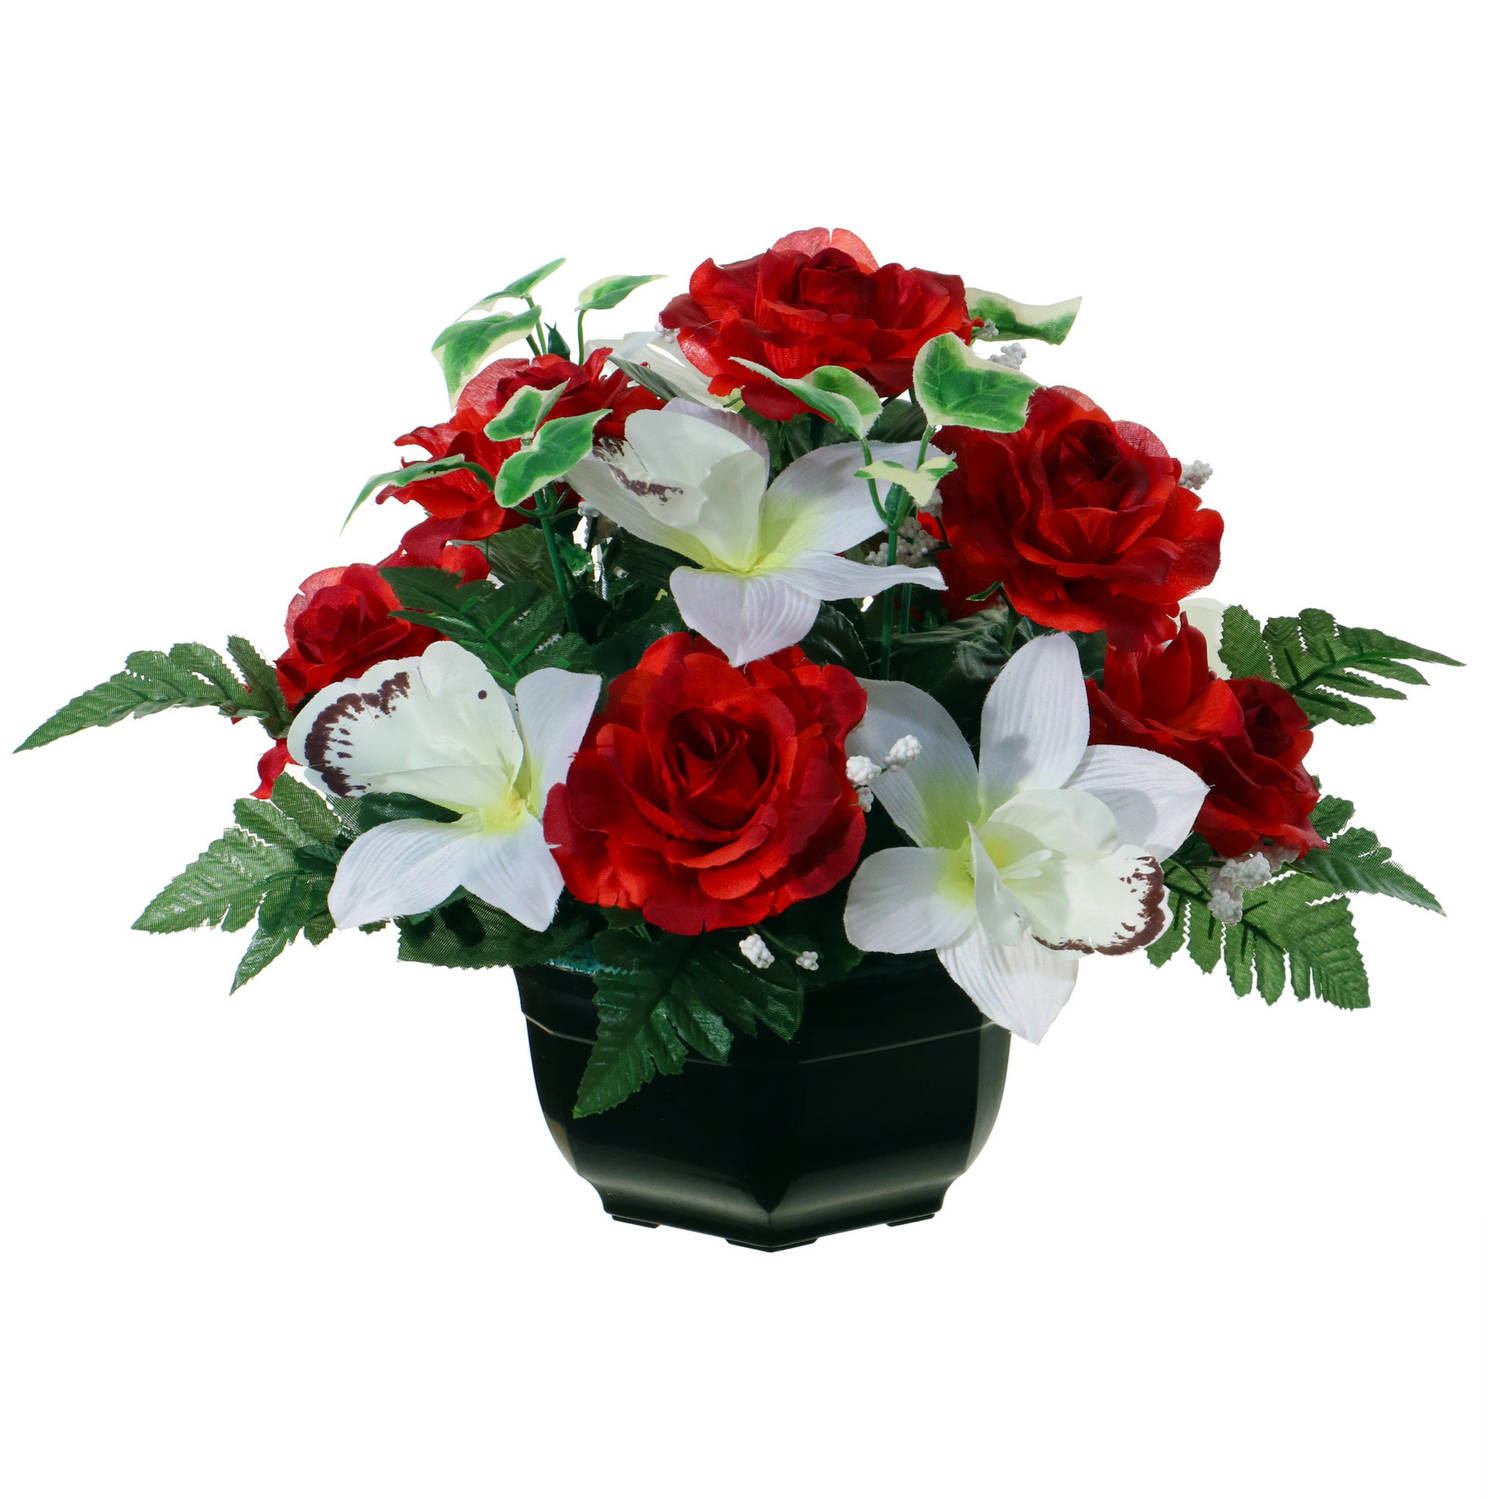 Louis Maes Kunstbloemen plantje in pot - kleuren rood/wit - 25 cm - Bloemstuk ornament - orchidee/rozen met bladgroen